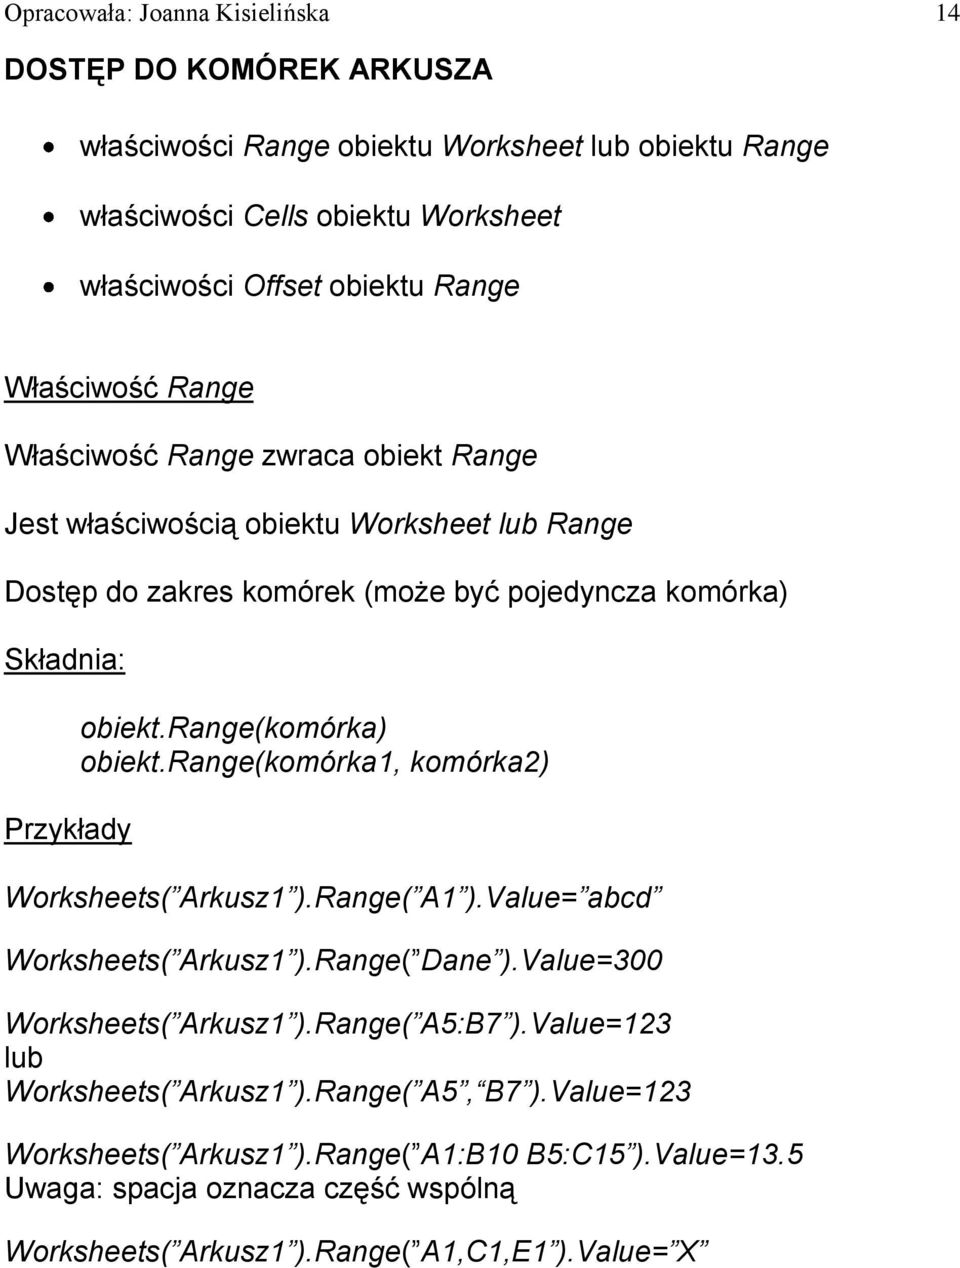 range(komórka) obiekt.range(komórka1, komórka2) Worksheets( Arkusz1 ).Range( A1 ).Value= abcd Worksheets( Arkusz1 ).Range( Dane ).Value=300 Worksheets( Arkusz1 ).Range( A5:B7 ).